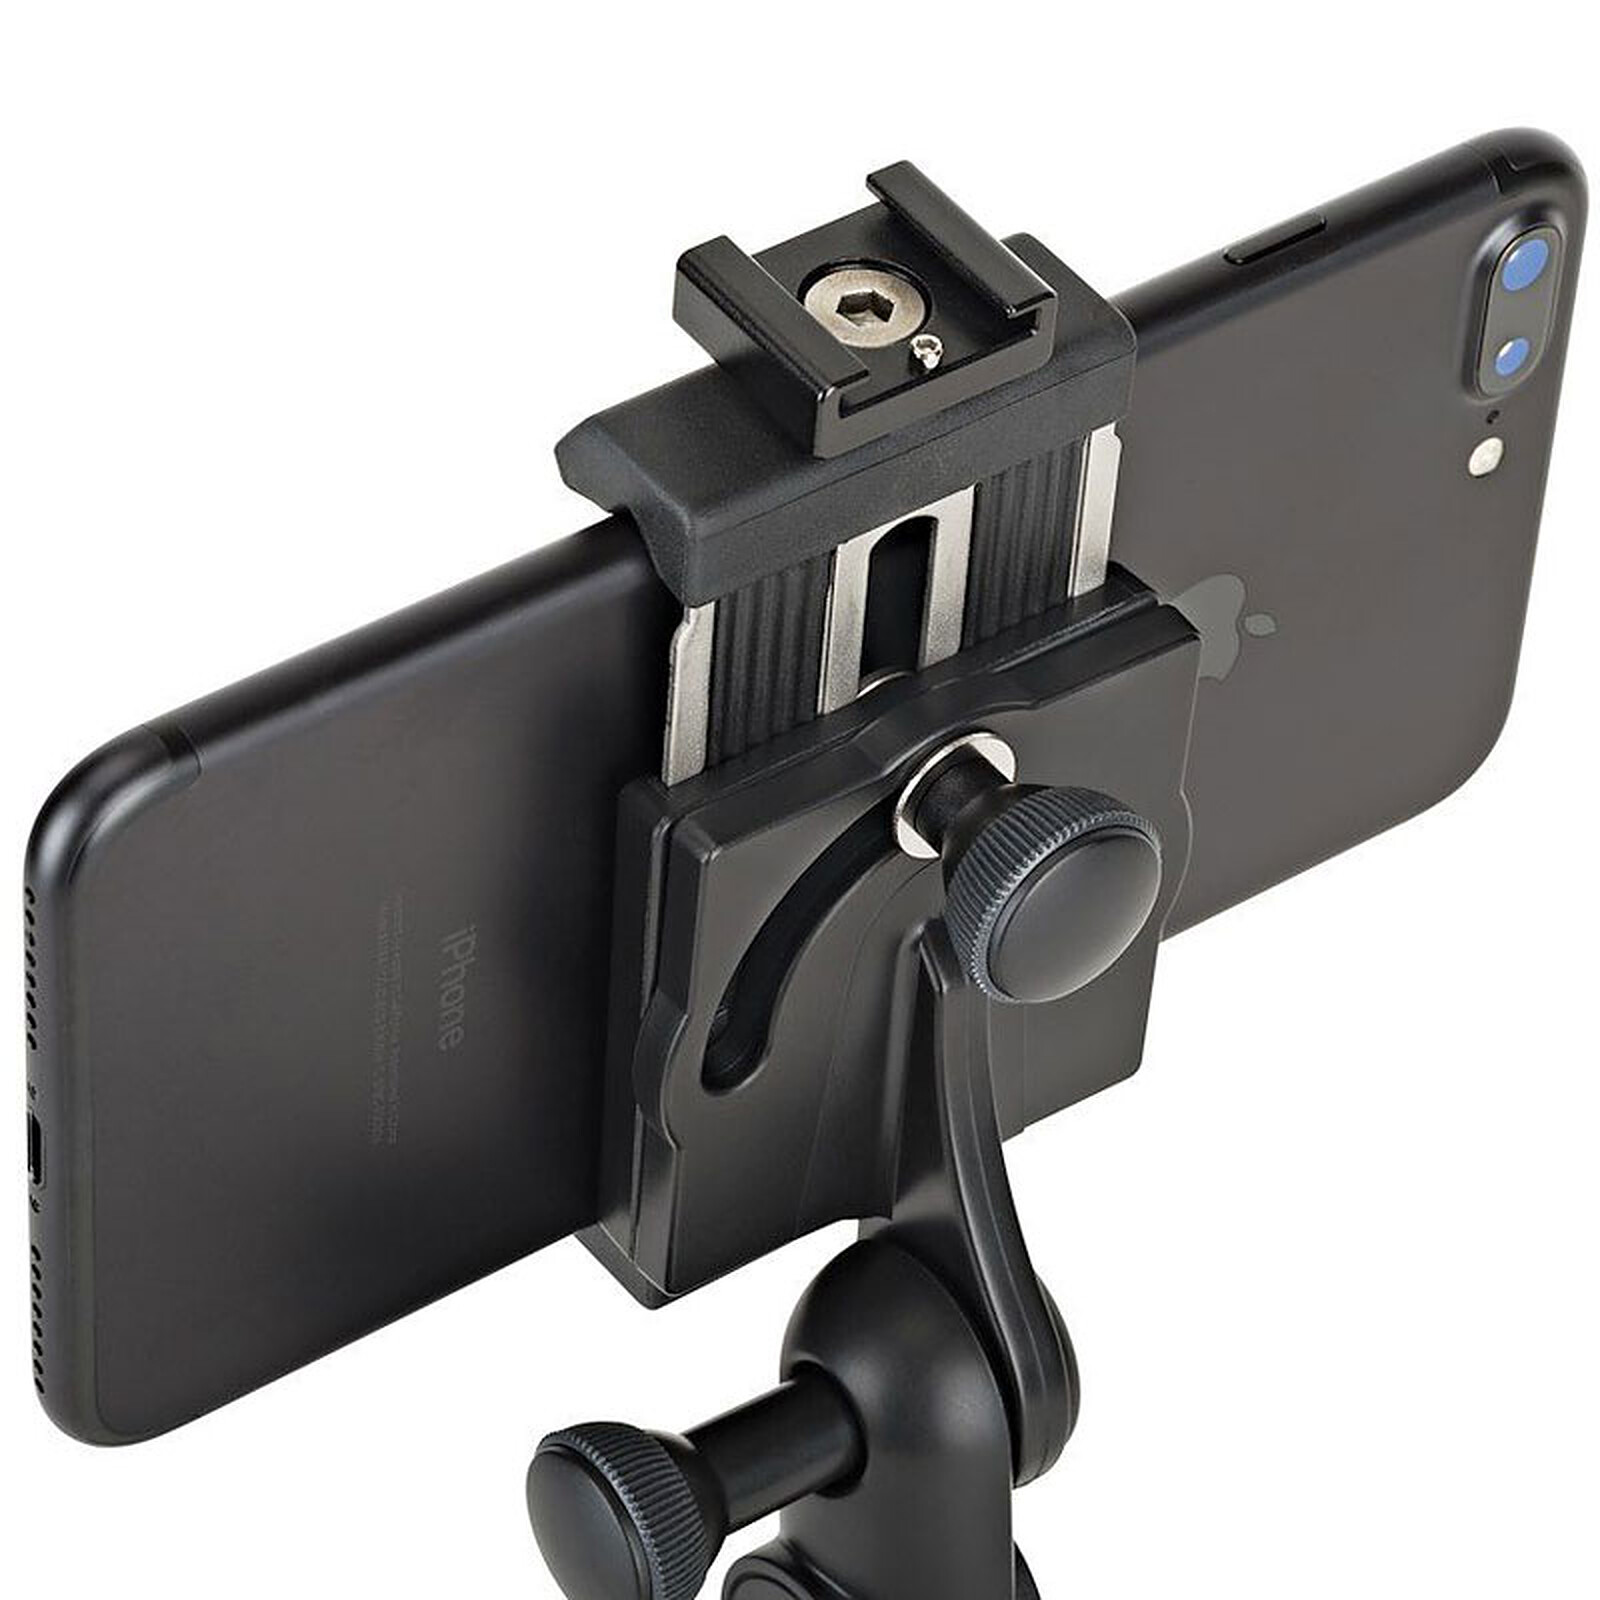 Joby GorillaPod Mobile Rig Trépied Vidéo Flexible pour smartphone -  Accessoires 